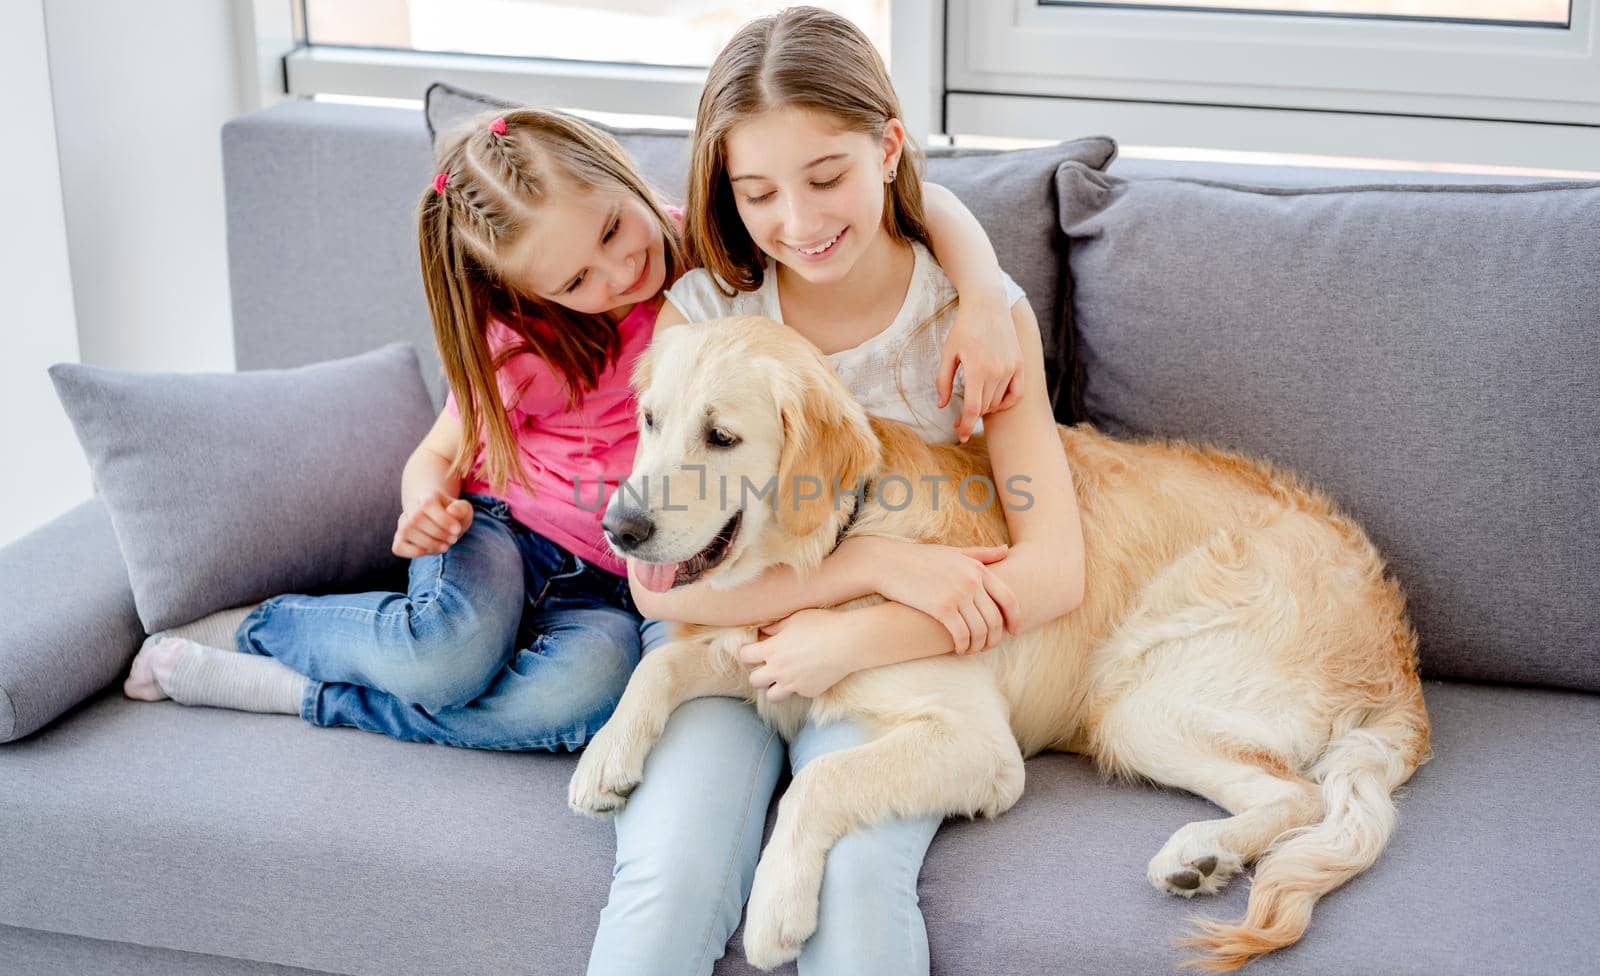 Smiling girls cuddling lovely dog by GekaSkr